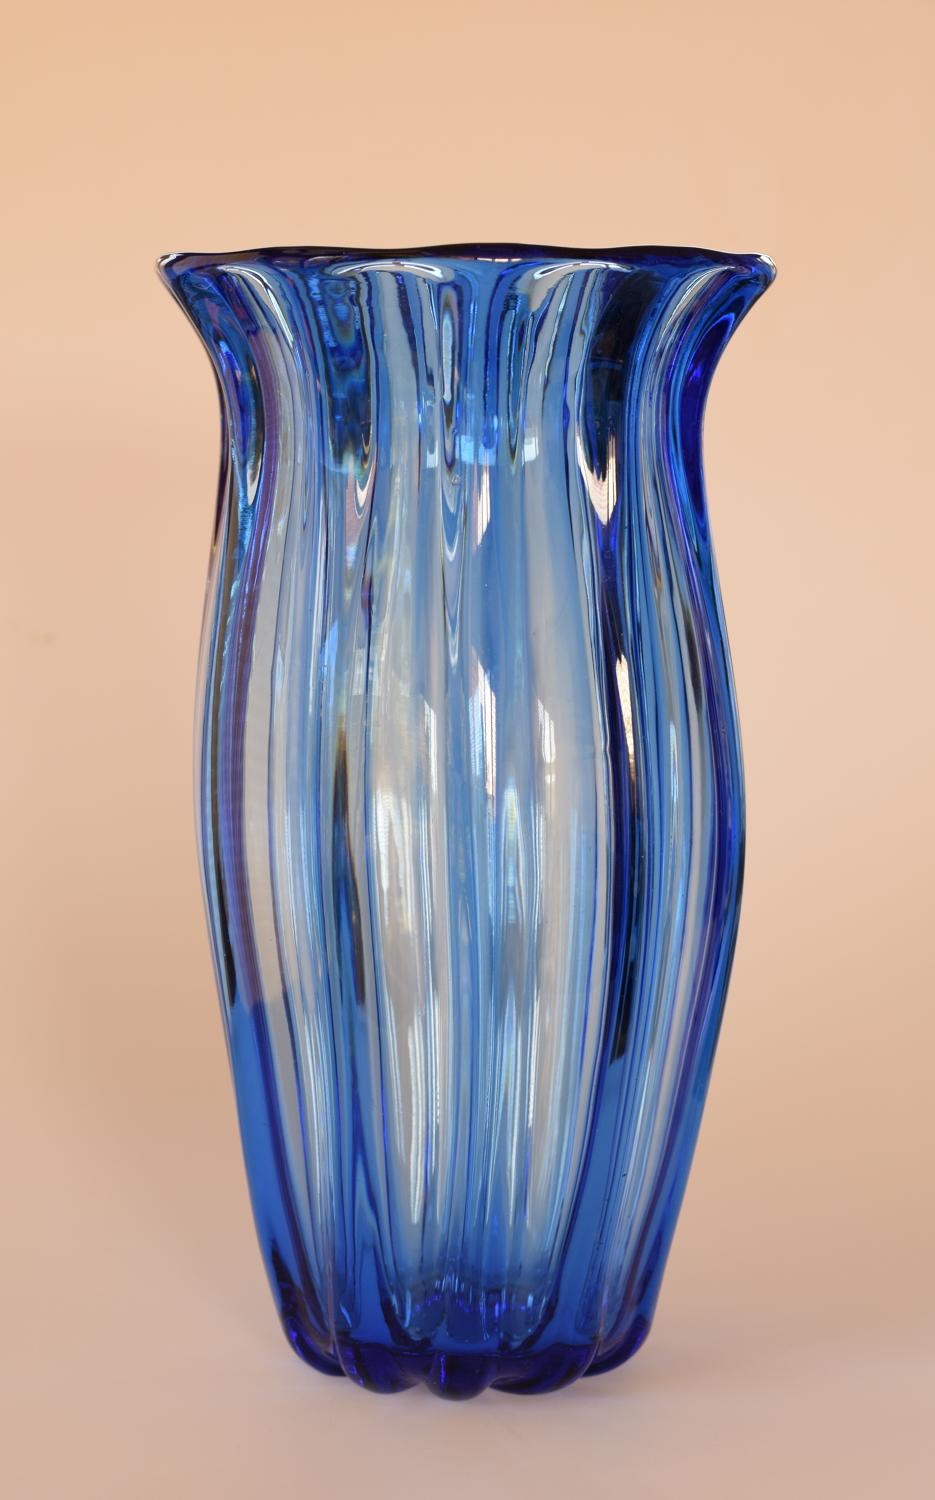 Huge blue Webb vase.